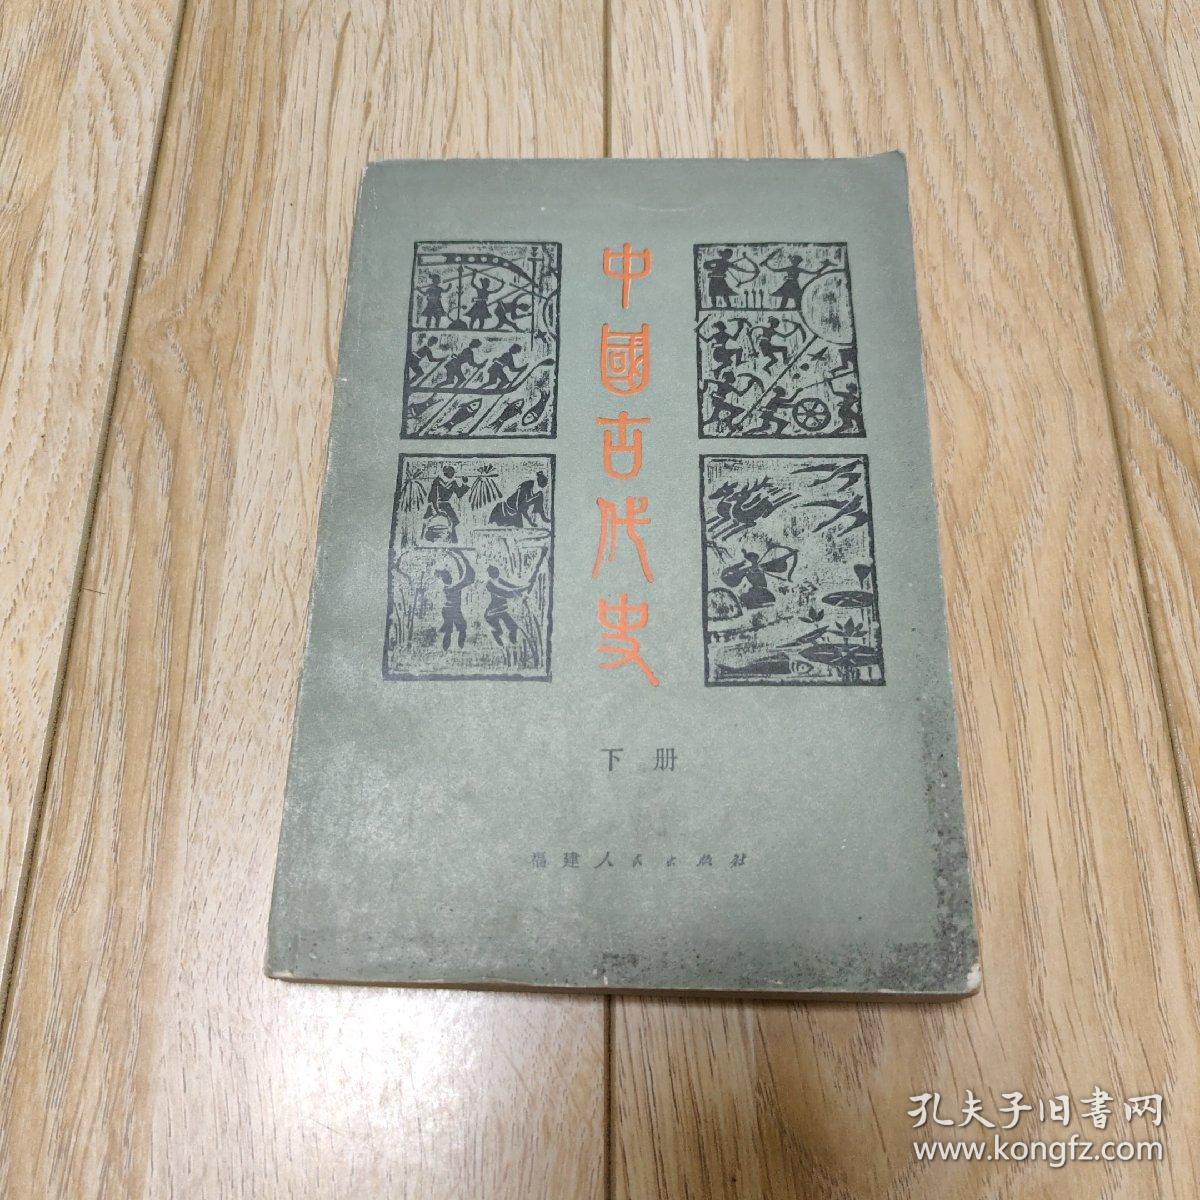 中国古代史 下册